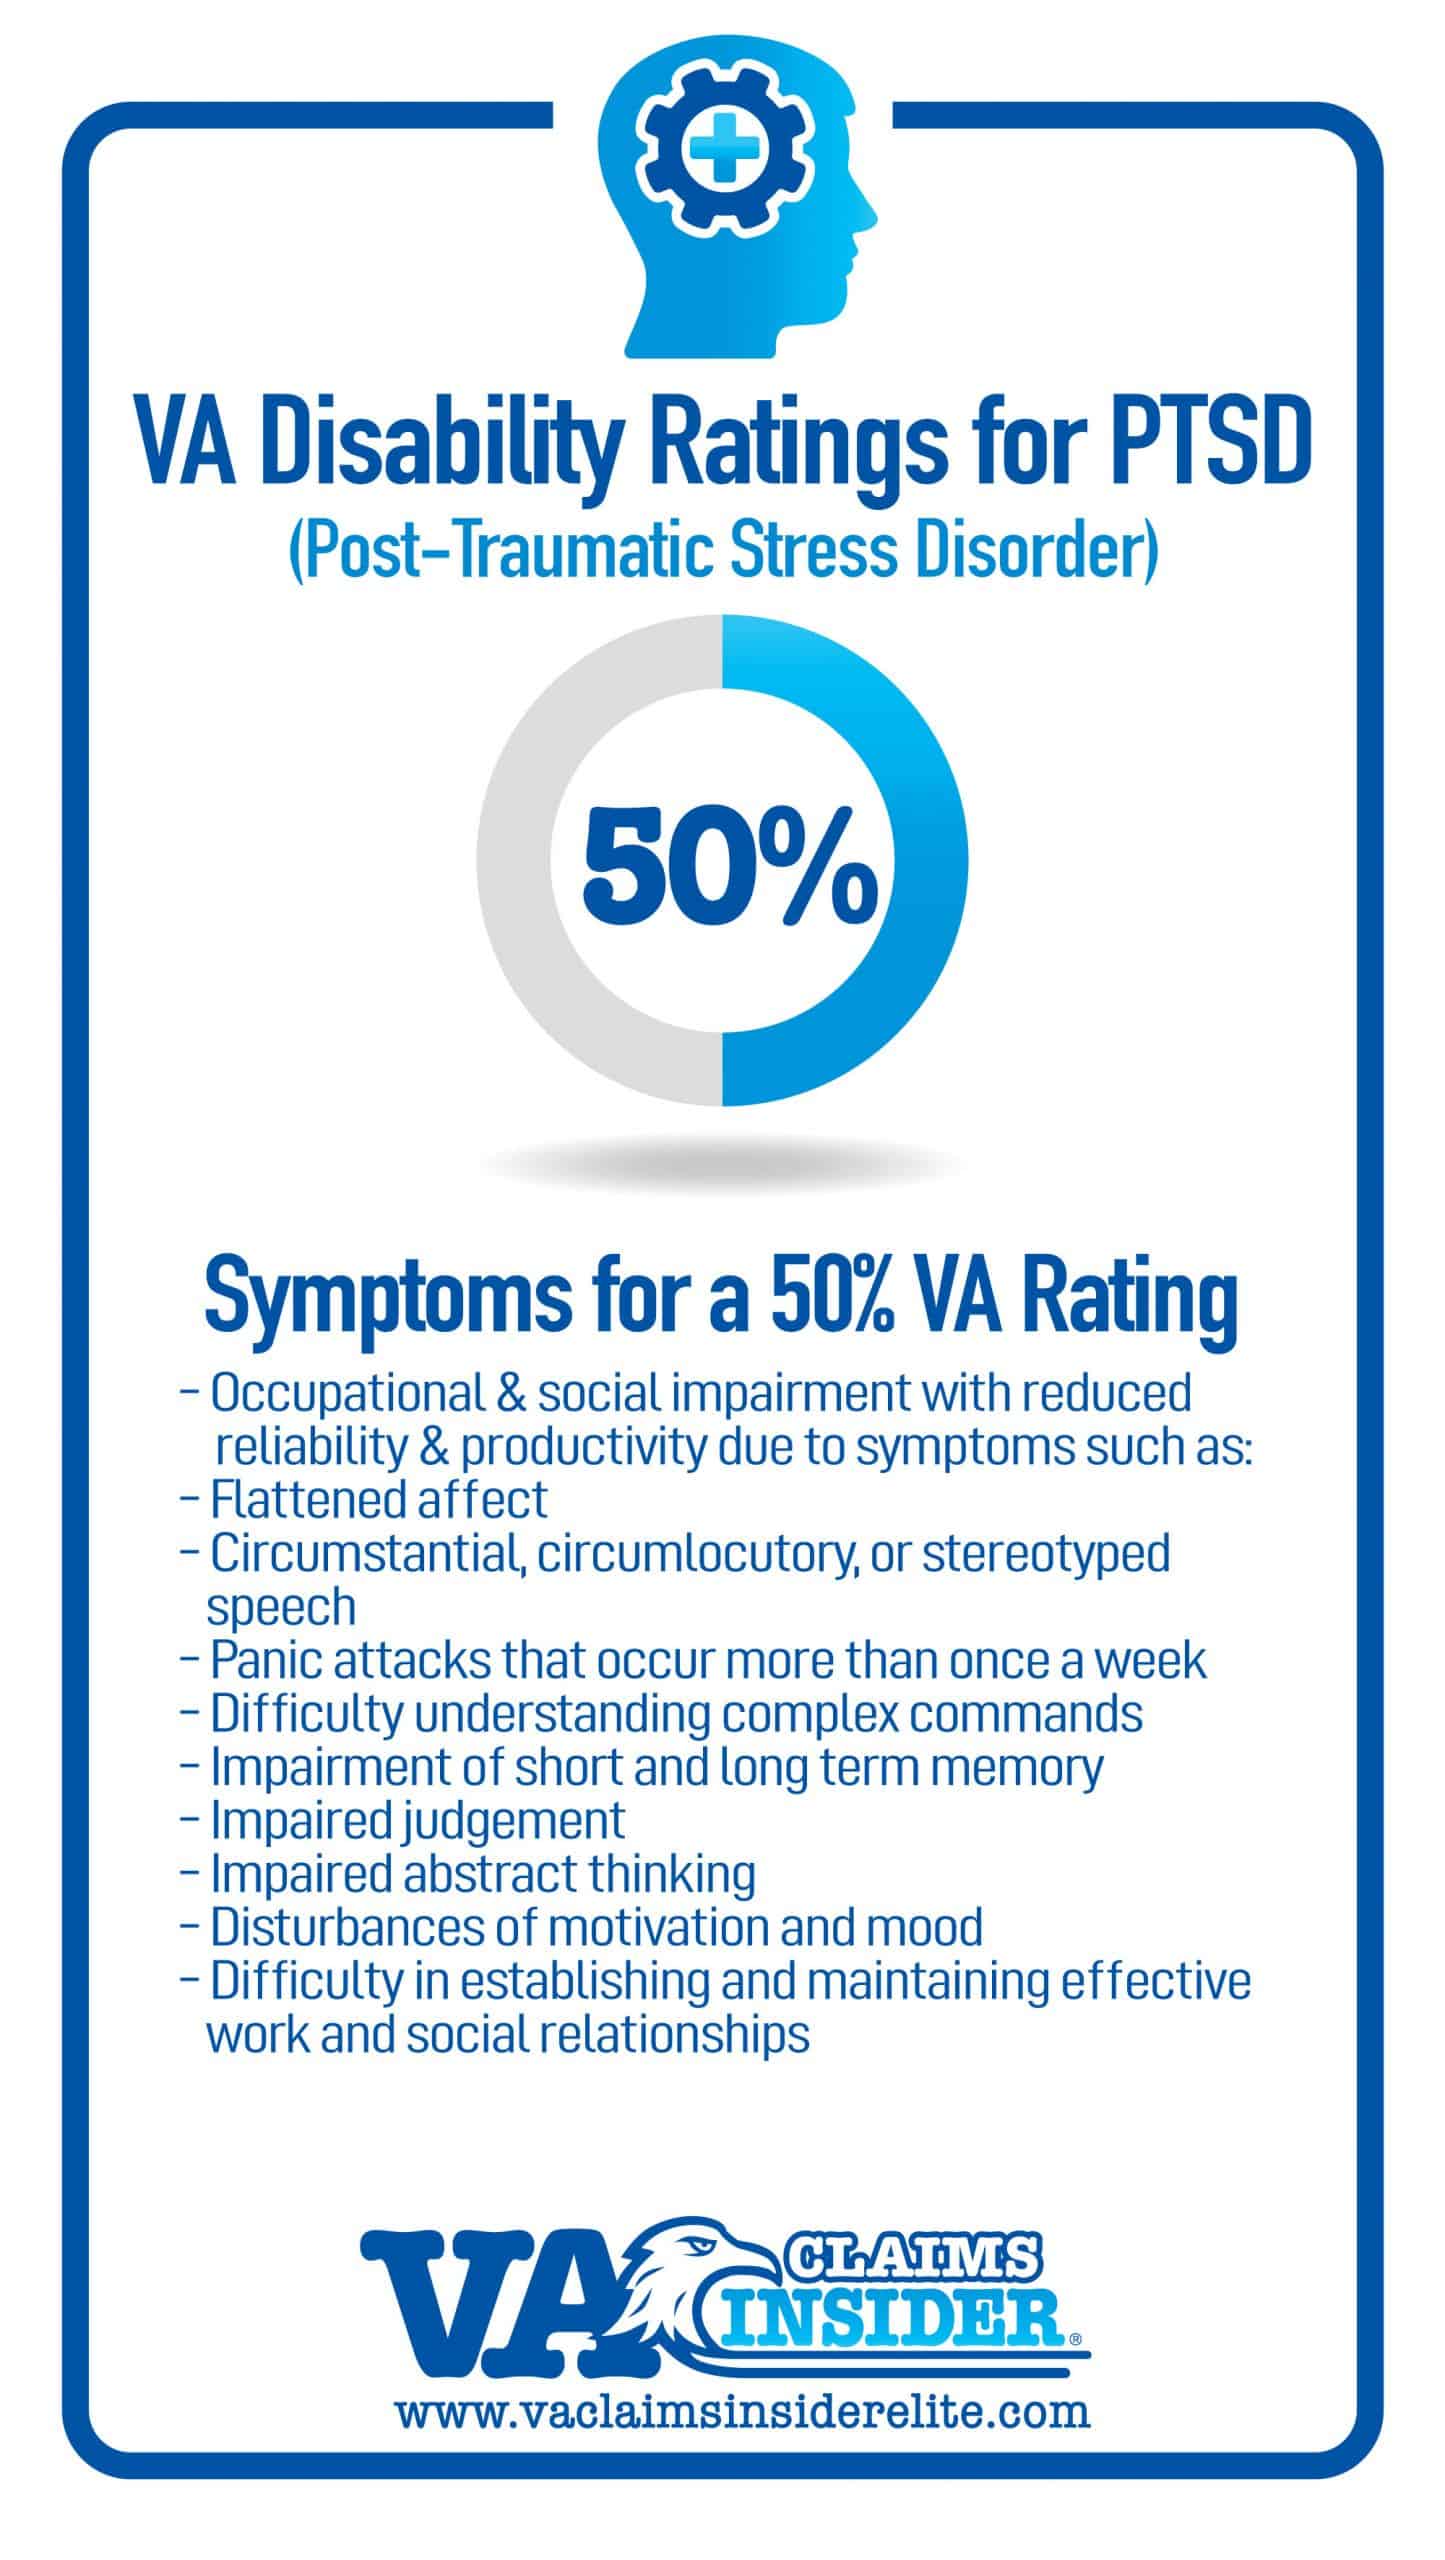 50% VA Rating Symptoms for PTSD